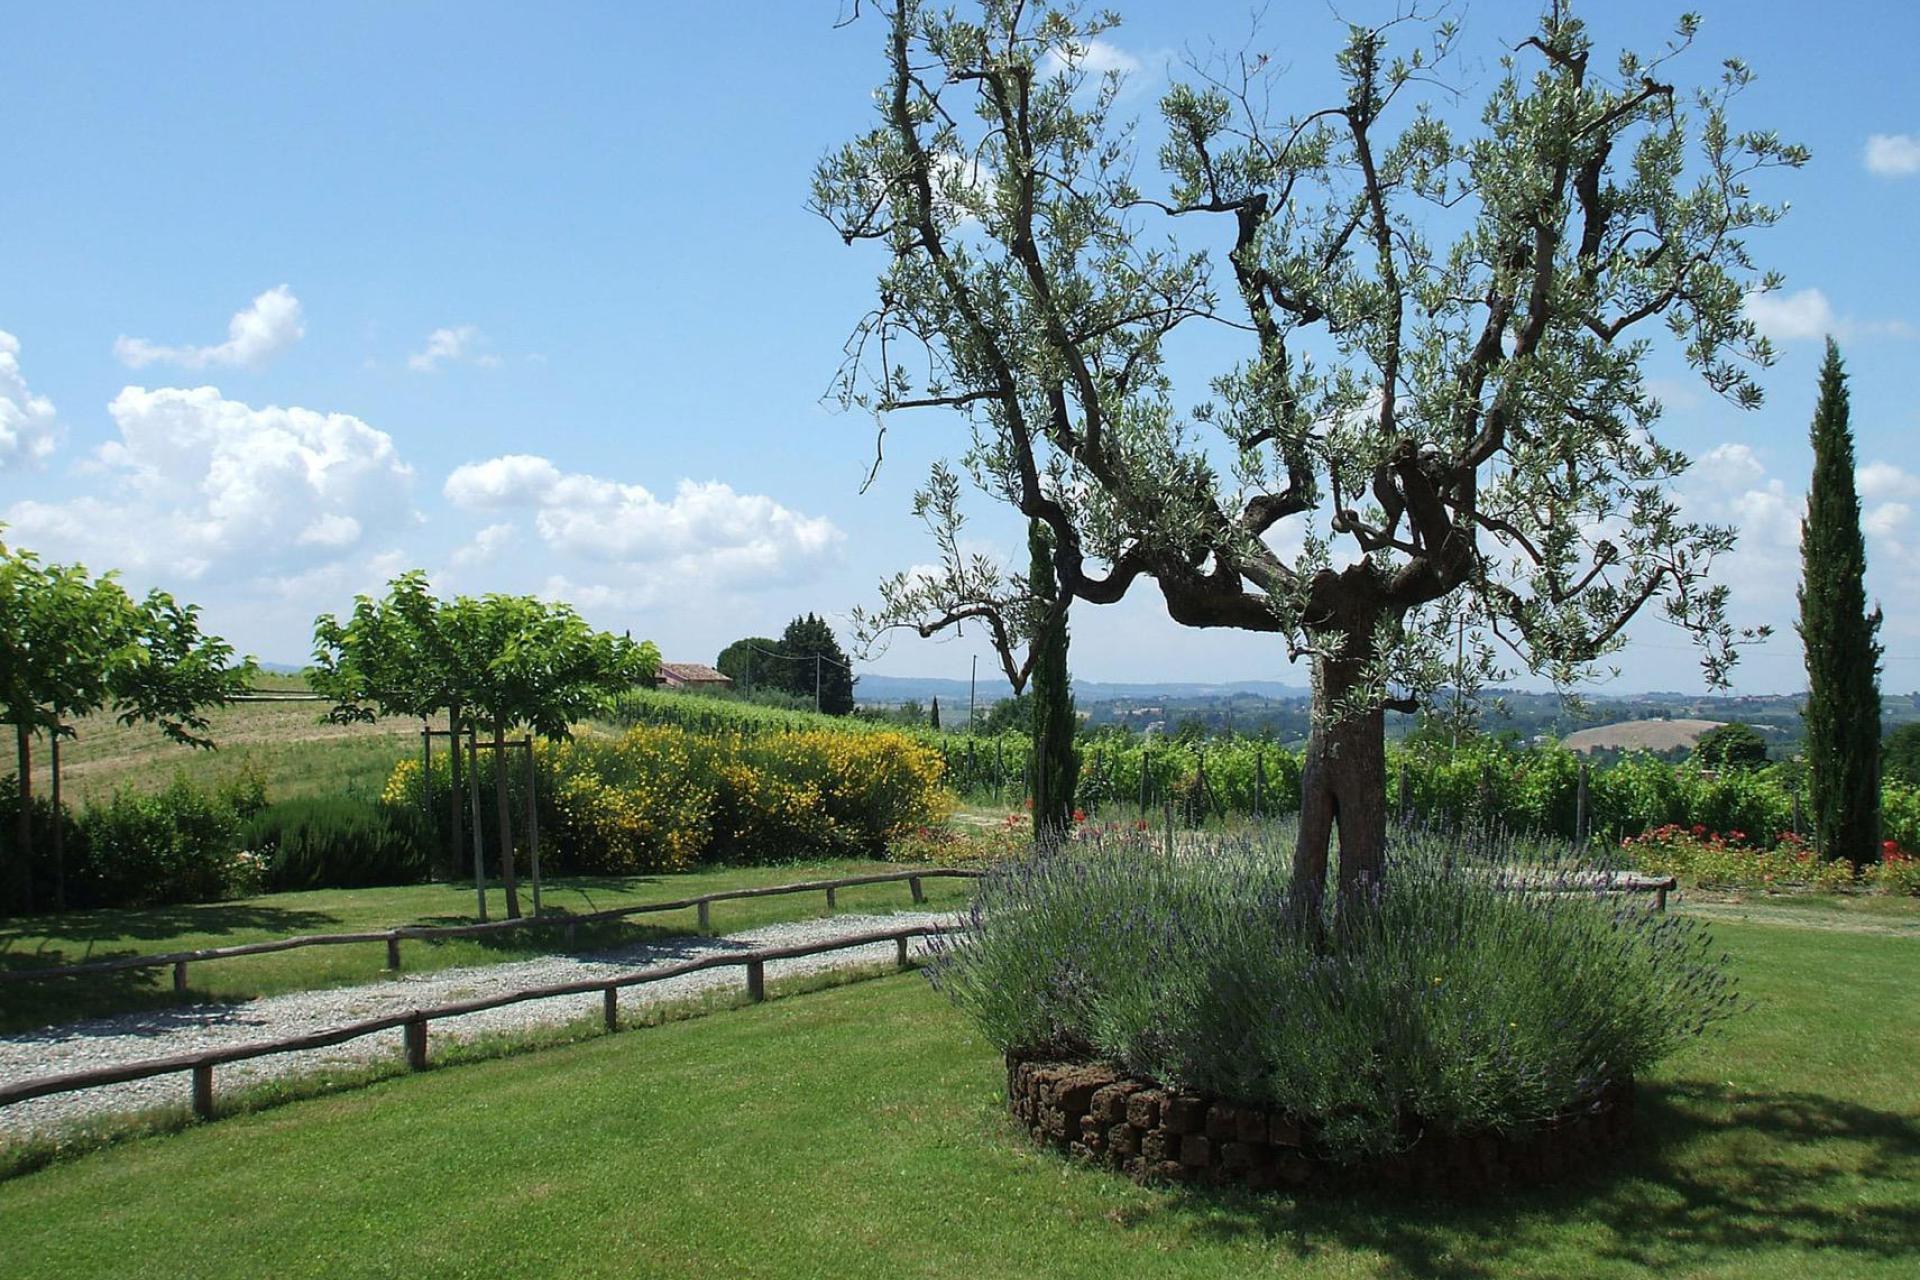 Agriturismo Toscane Wijnboerderij in Chianti-gebied – met fraai uitzicht | myitaly.nl